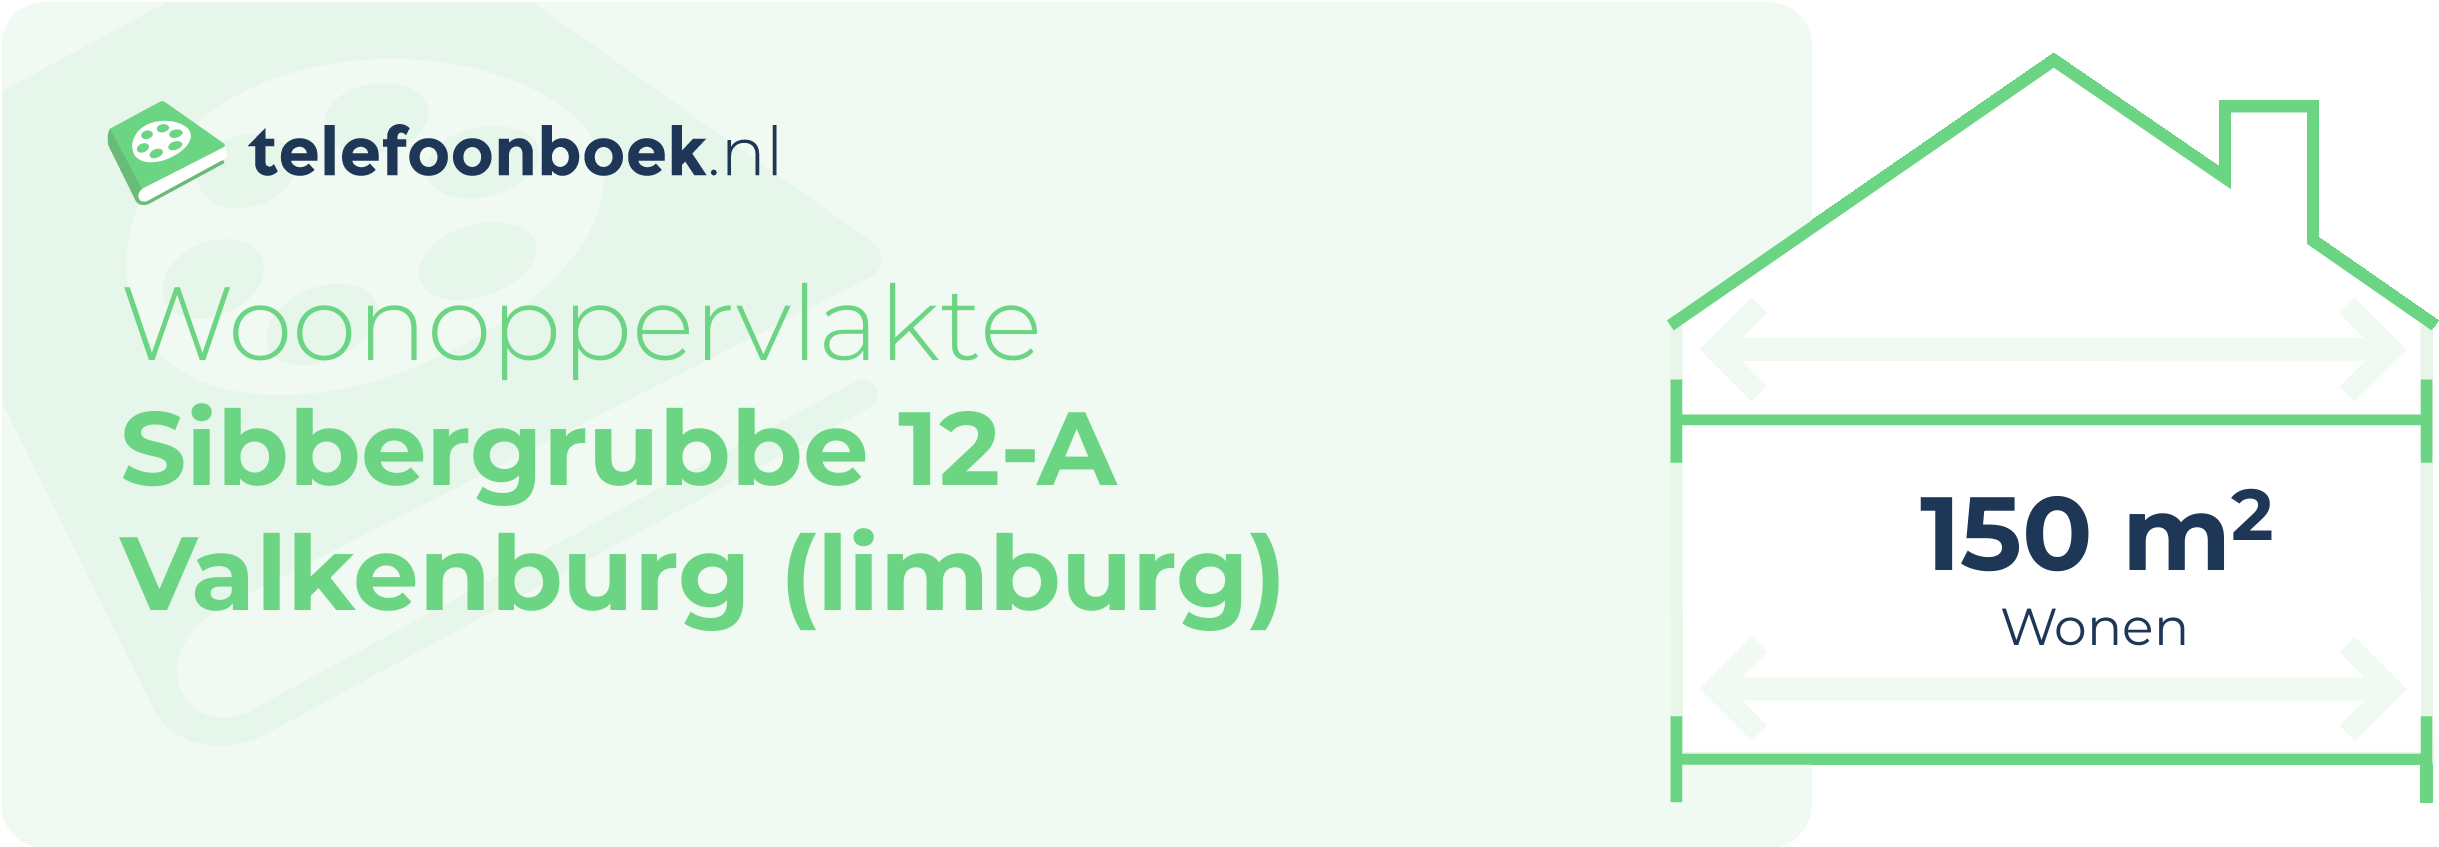 Woonoppervlakte Sibbergrubbe 12-A Valkenburg (Limburg)